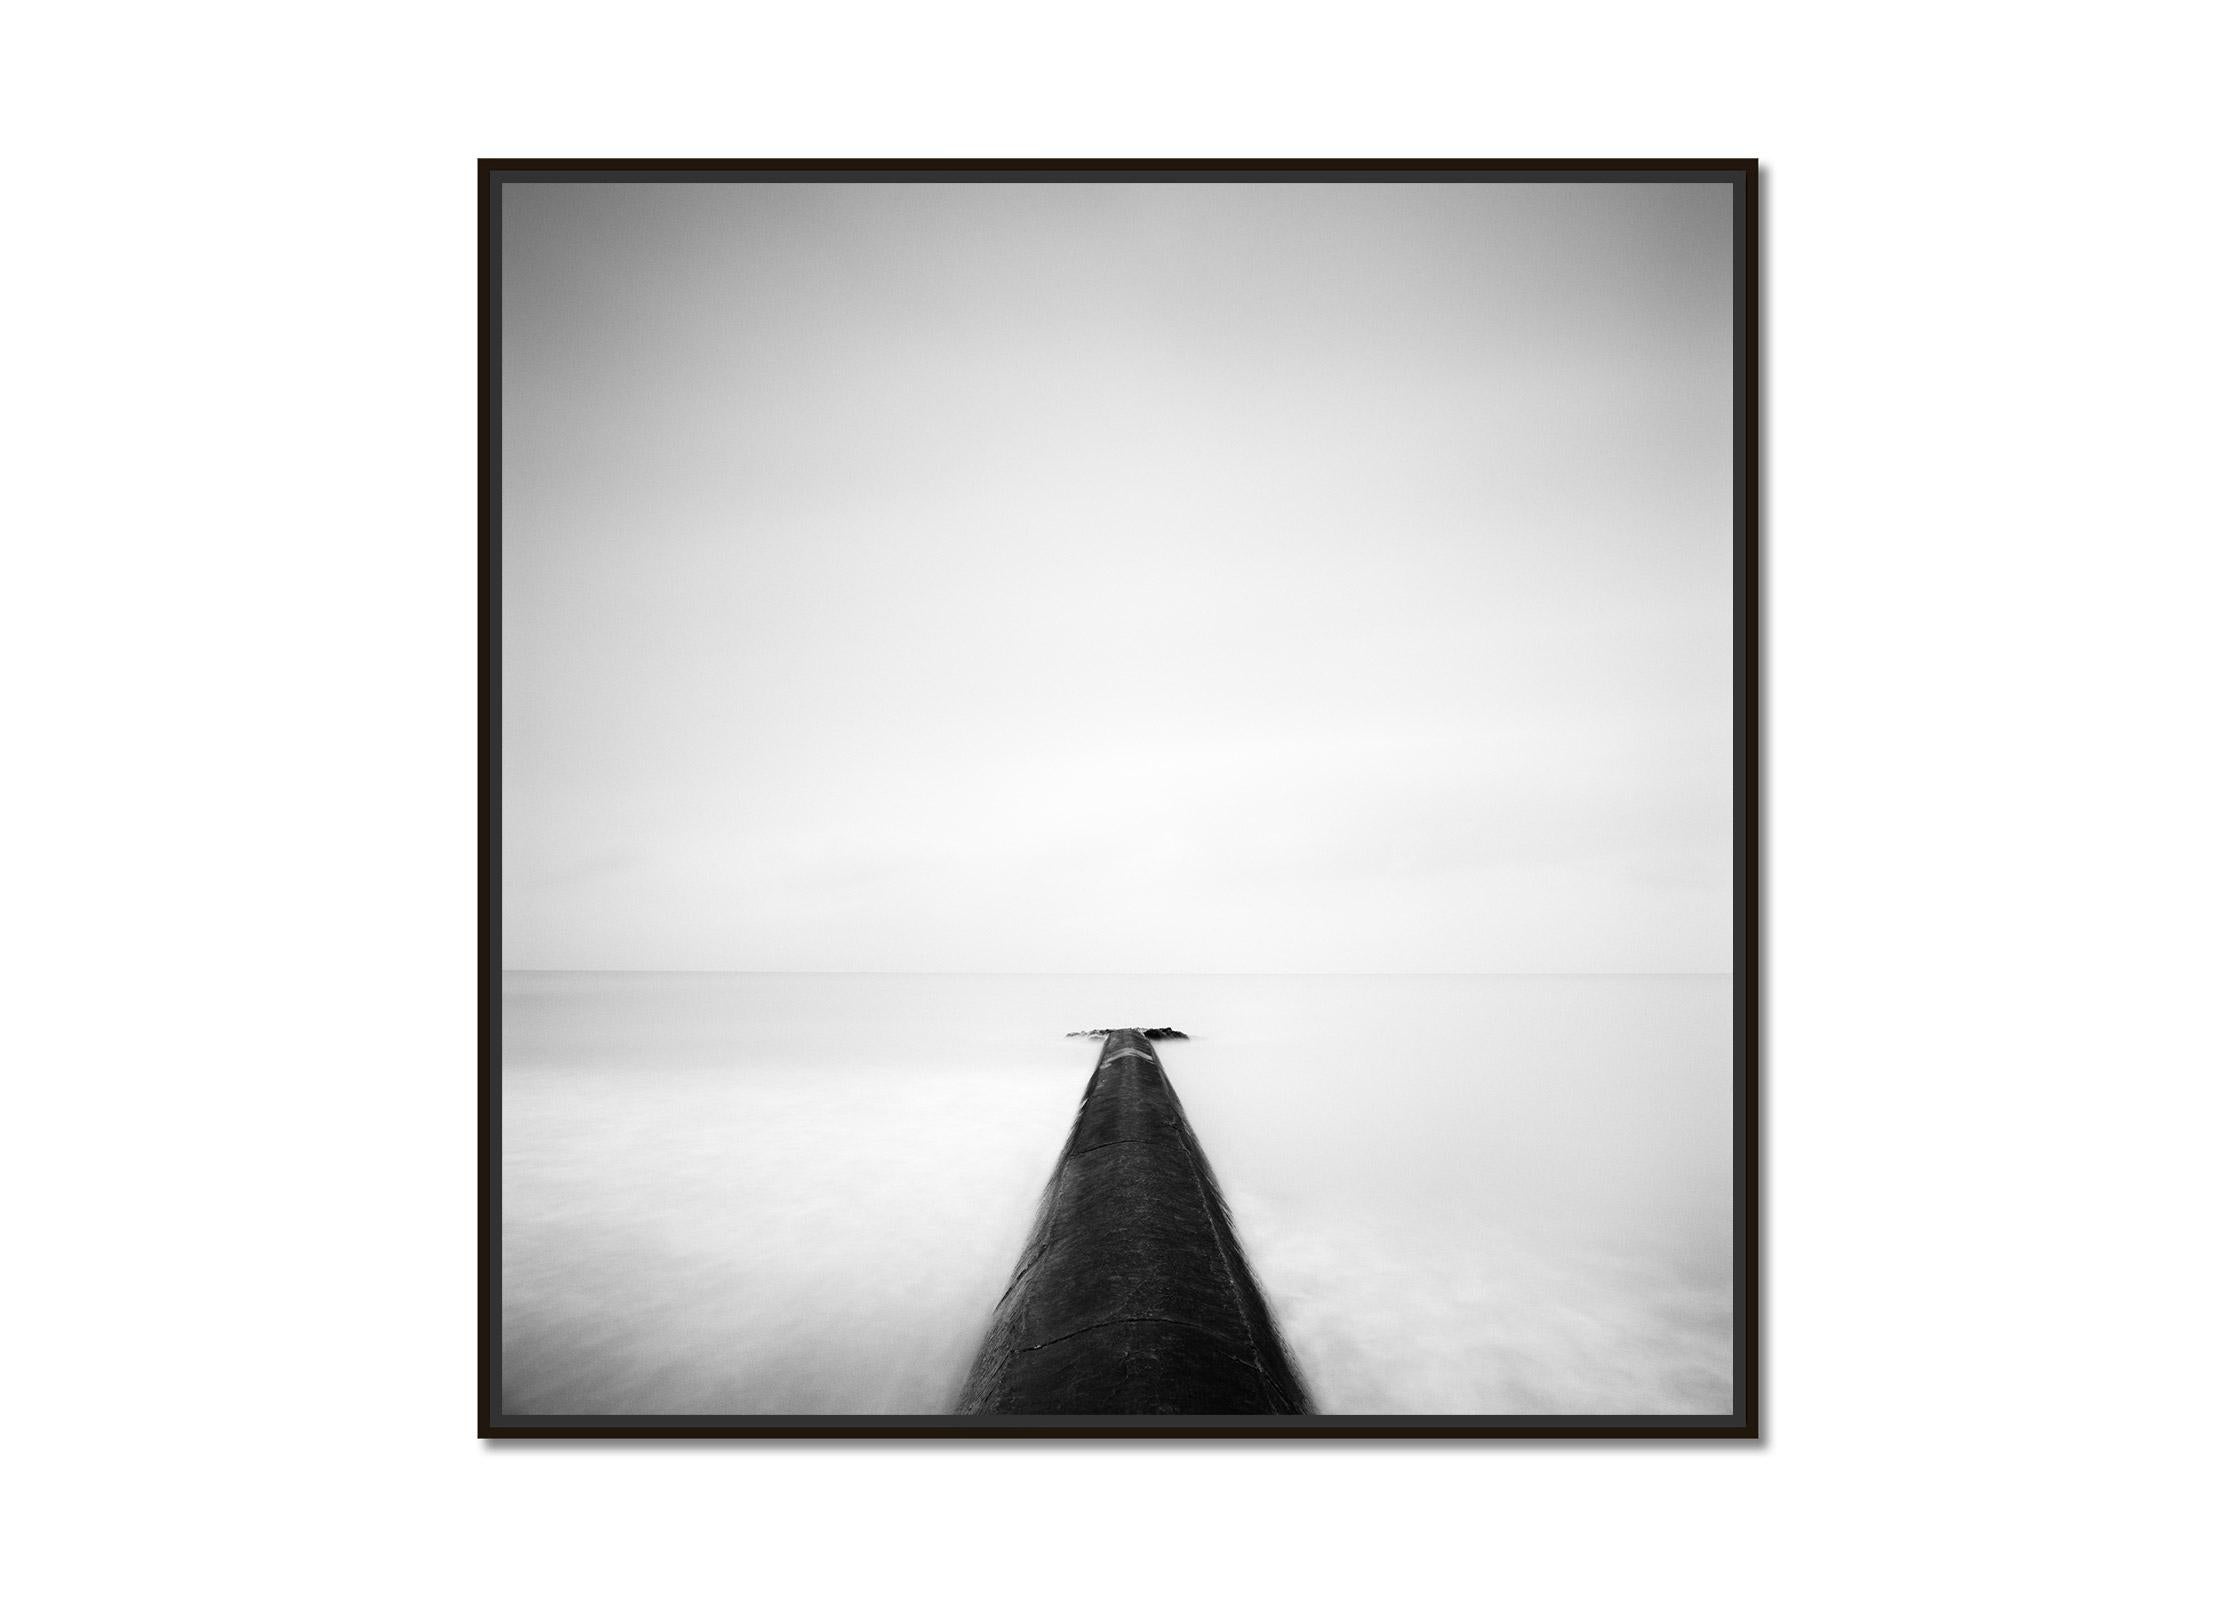 Straight on, Pier, Ozean, Normandie, France, photographie en noir et blanc, paysage - Photograph de Gerald Berghammer